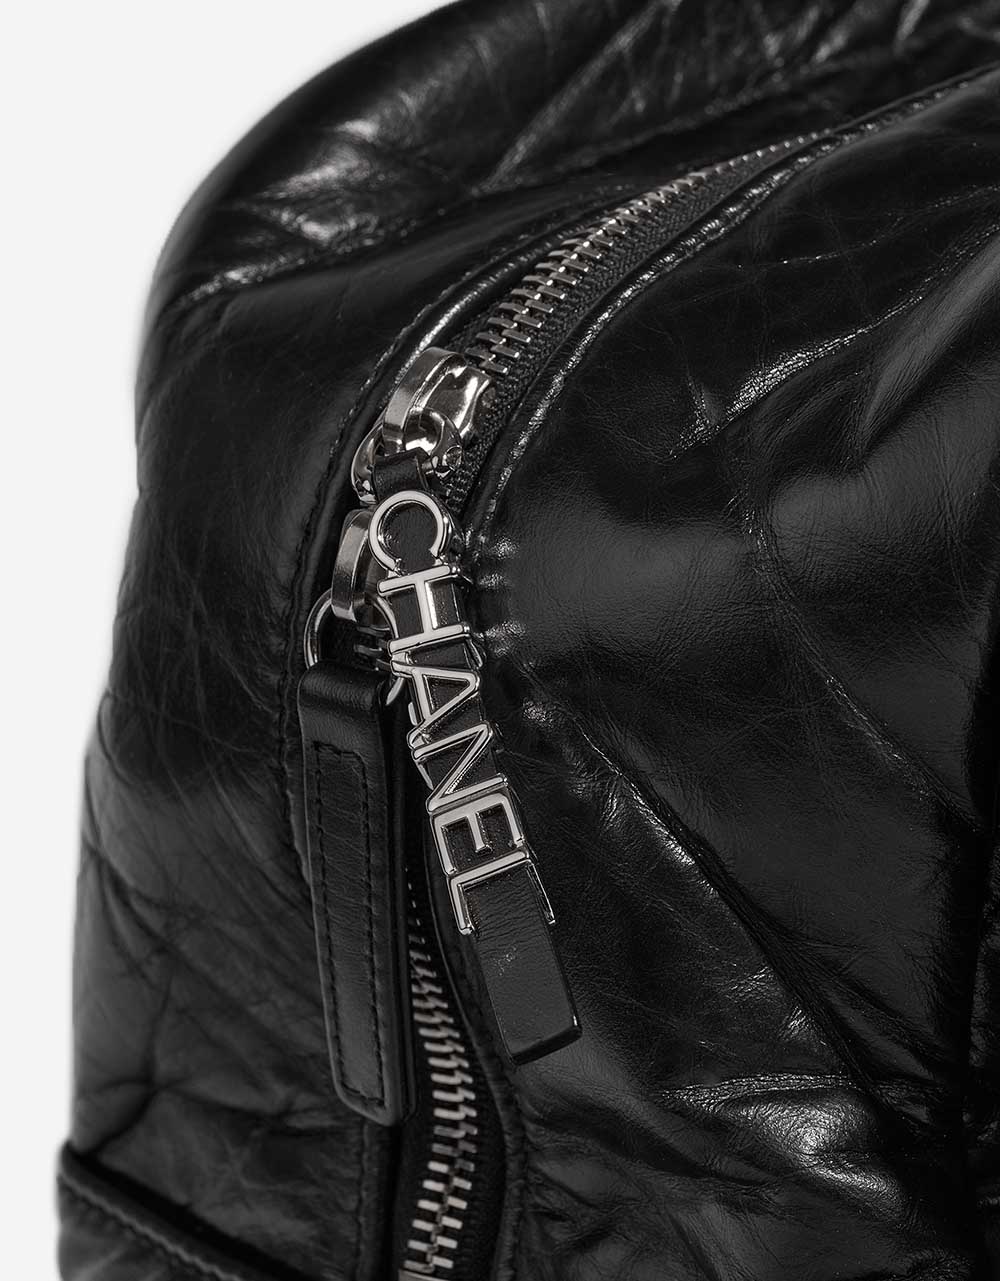 Chanel ExpressBowling Black Verschluss-System | Verkaufen Sie Ihre Designer-Tasche auf Saclab.com